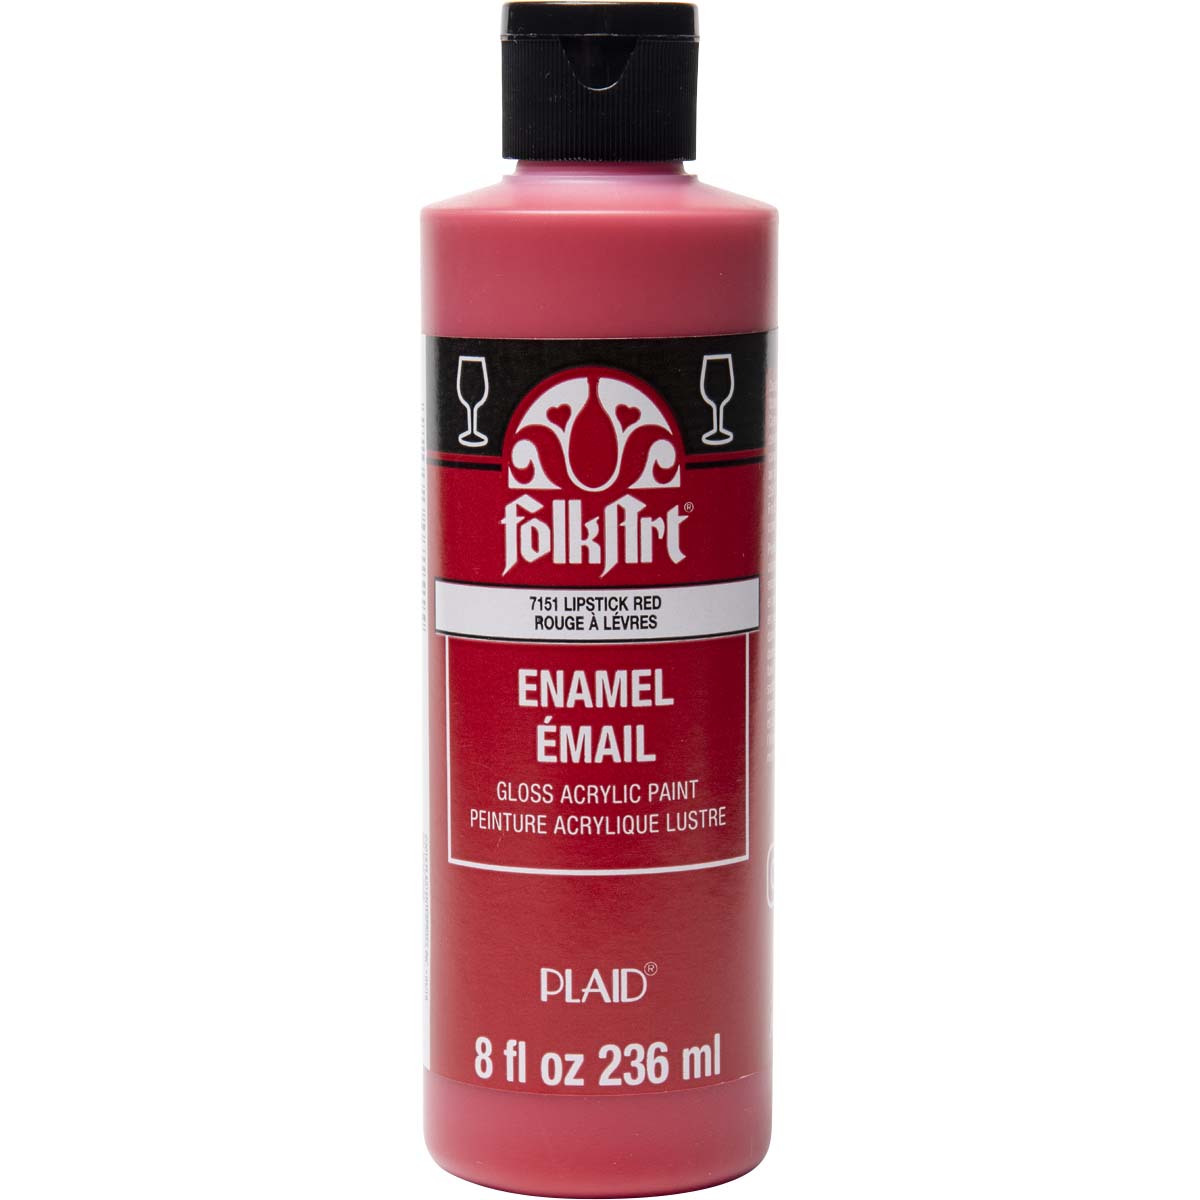 FolkArt ® Enamels™ - Lipstick Red, 8 oz. - 7151